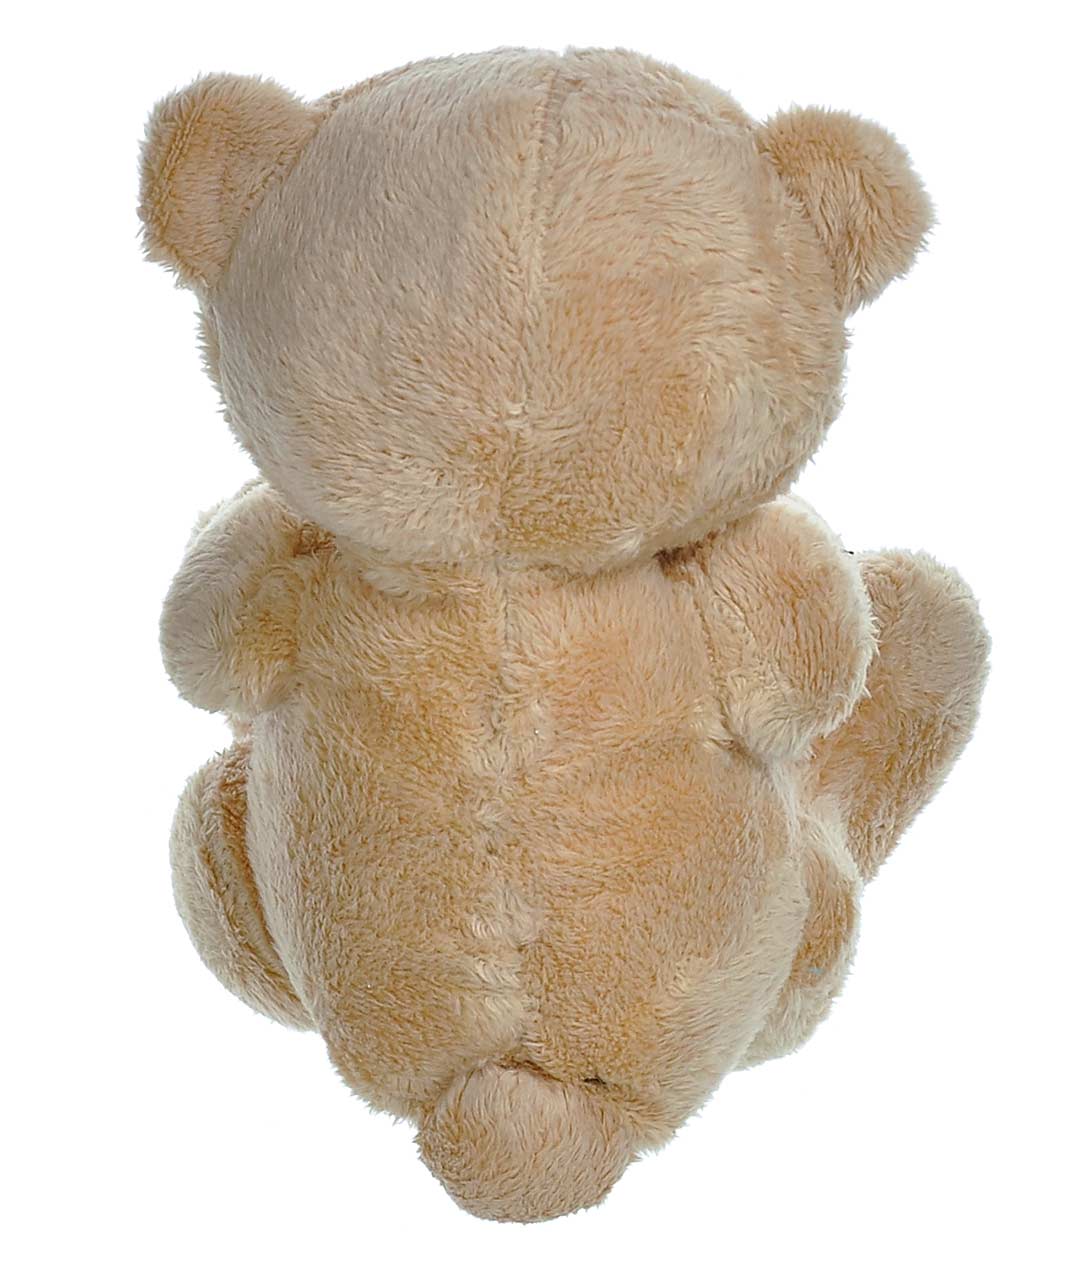 Изображение М'яка іграшка Ведмедик Тедді з серцем